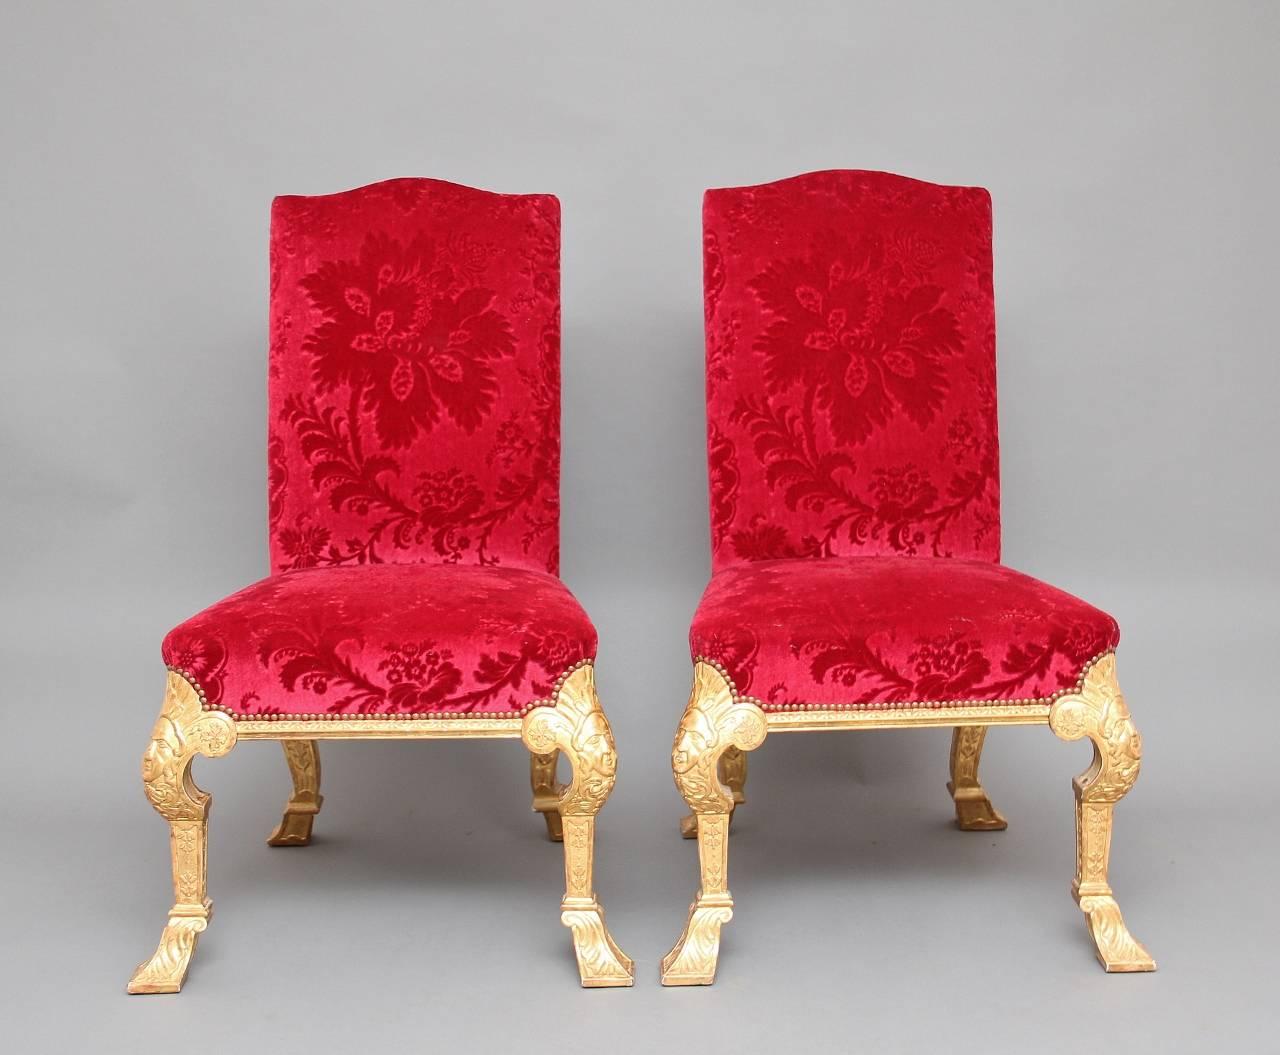 Ein fabelhaftes Paar geschnitzte und vergoldete Stühle aus dem frühen 20. Jahrhundert im George-I-Stil, die vorderen Kabriole Beine haben geschnitzte Maskenköpfe auf den Knien und geschnitzte Dekoration läuft die Beine, die hinteren Beine sind auch